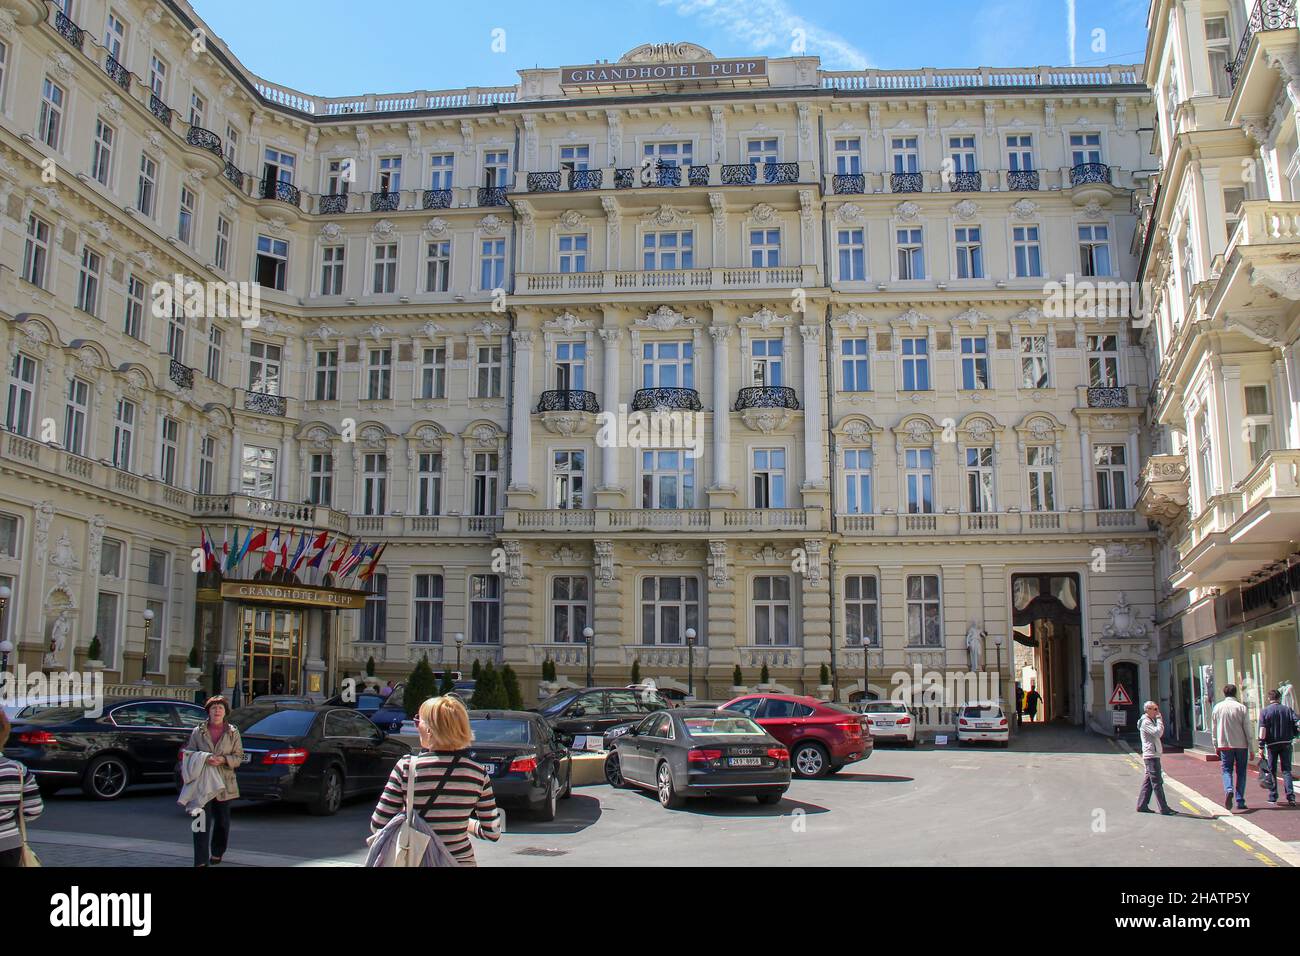 KARLOVY VARY, CECO - 26 APRILE 2012: L'elegante Grandhotel Pupp del 1701 con una facciata neobarocca è un punto di riferimento architettonico della città. Foto Stock